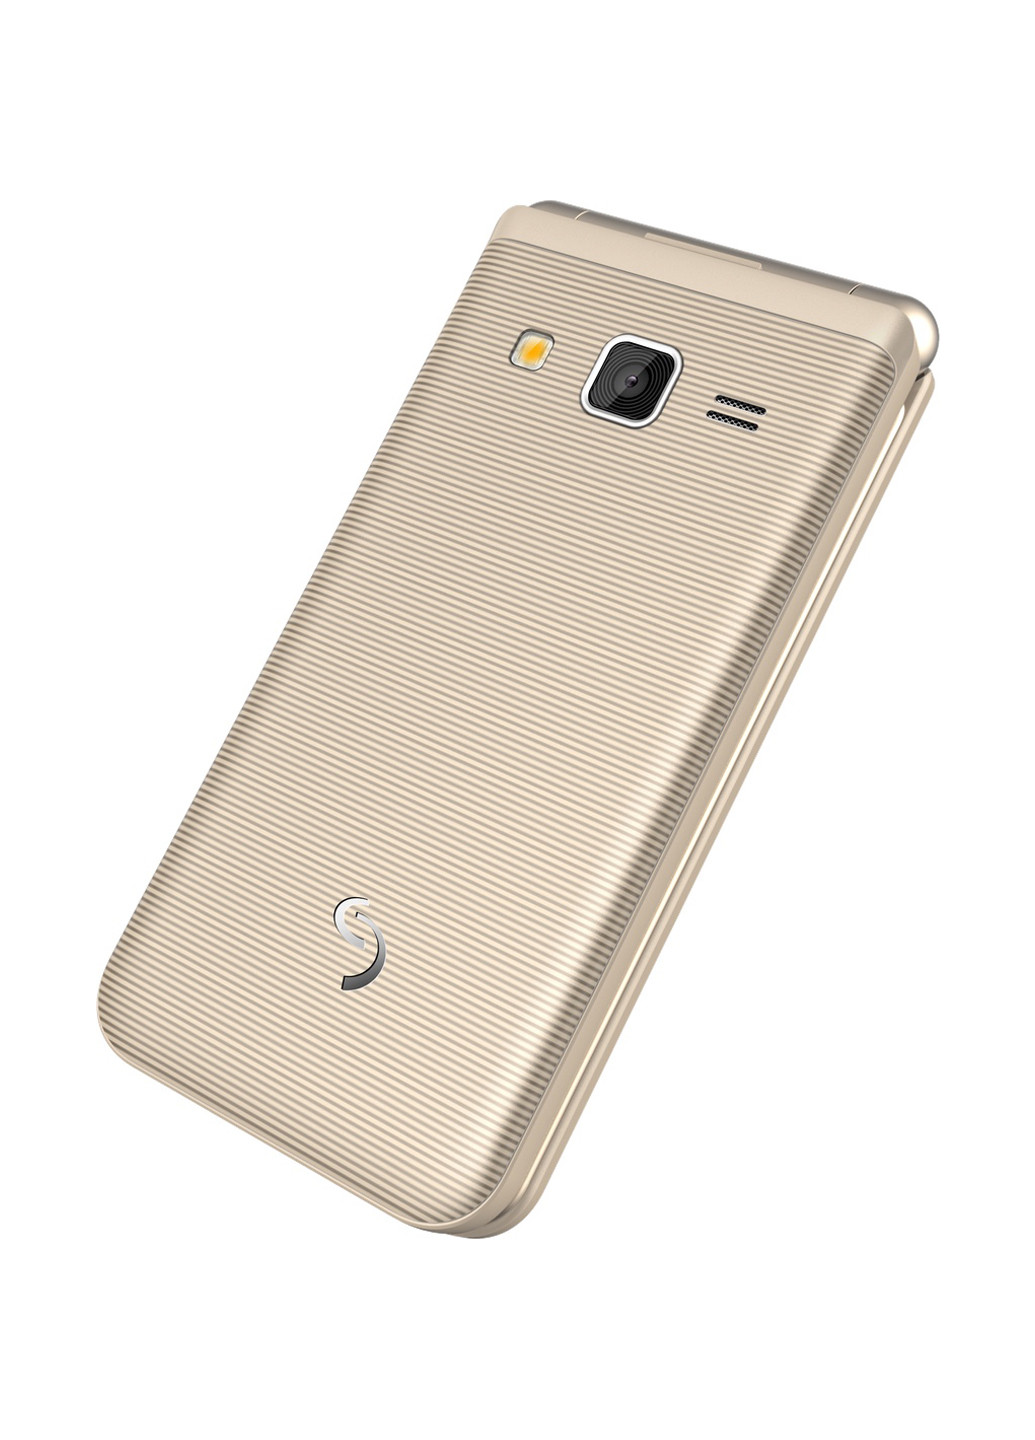 Мобильный телефон Sigma mobile x-style 28 flip gold-mokka (4827798524657) (130940047)